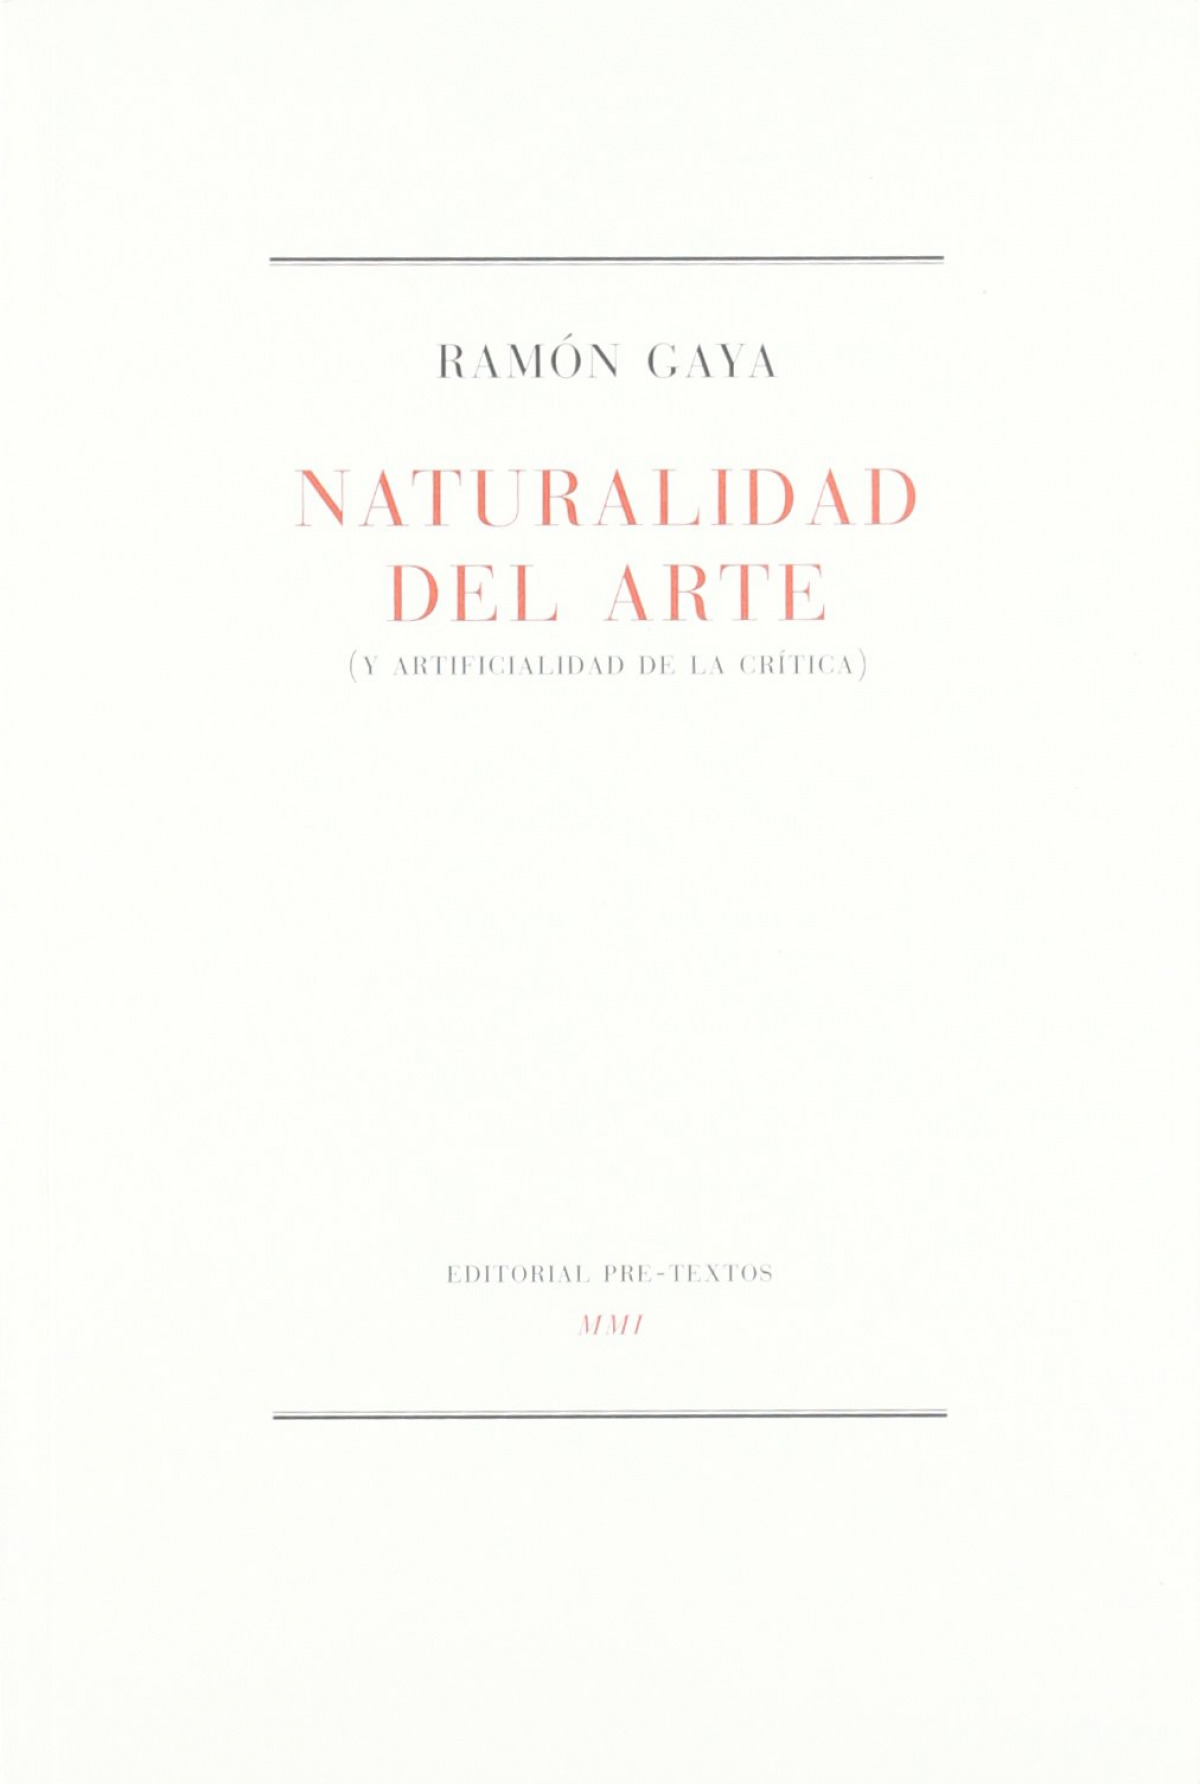 Naturalidad del arte (y artificialidad de la Crítica) (Y ARTIFICIALIDA - Ramón Gaya Pomes